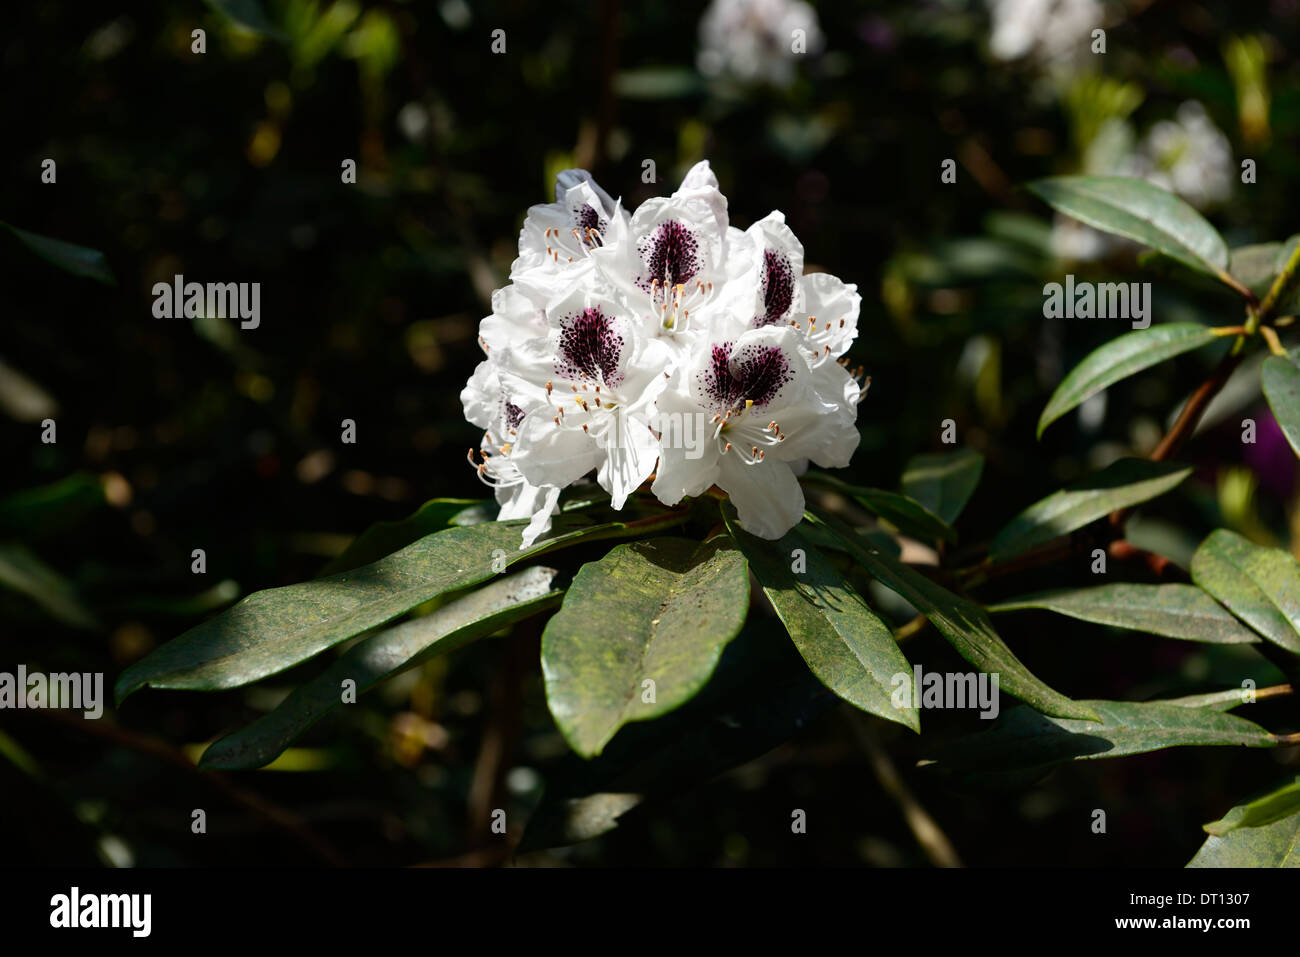 Rhododendron saffo bianco viola scuro iscrizioni di petali di fiori arbusti fioriti fiore bicolor bicolor Foto Stock